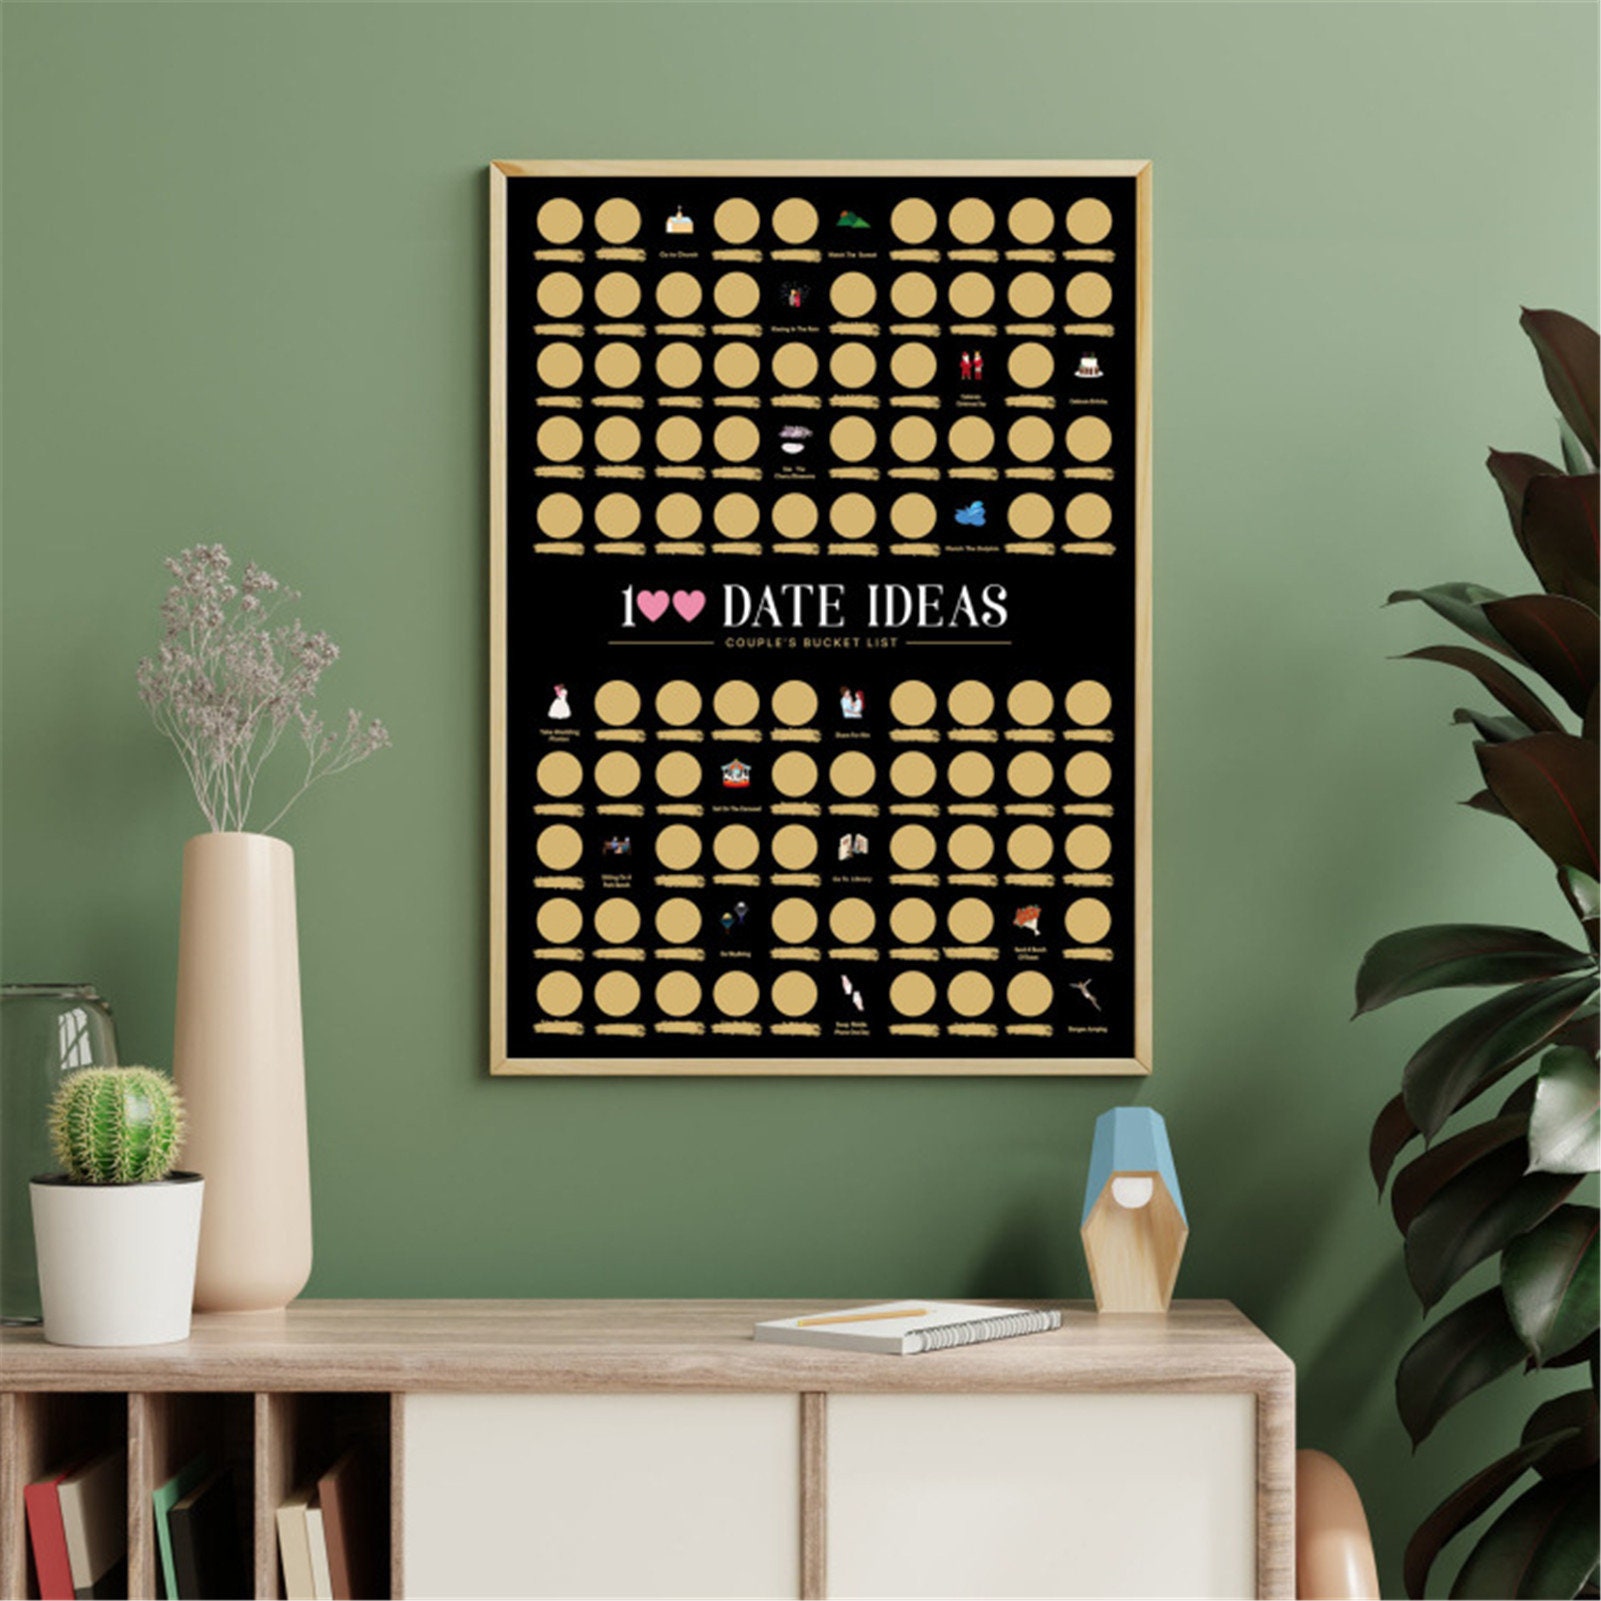 100 Date Ideas Scratch-Off Poster – Date Mate